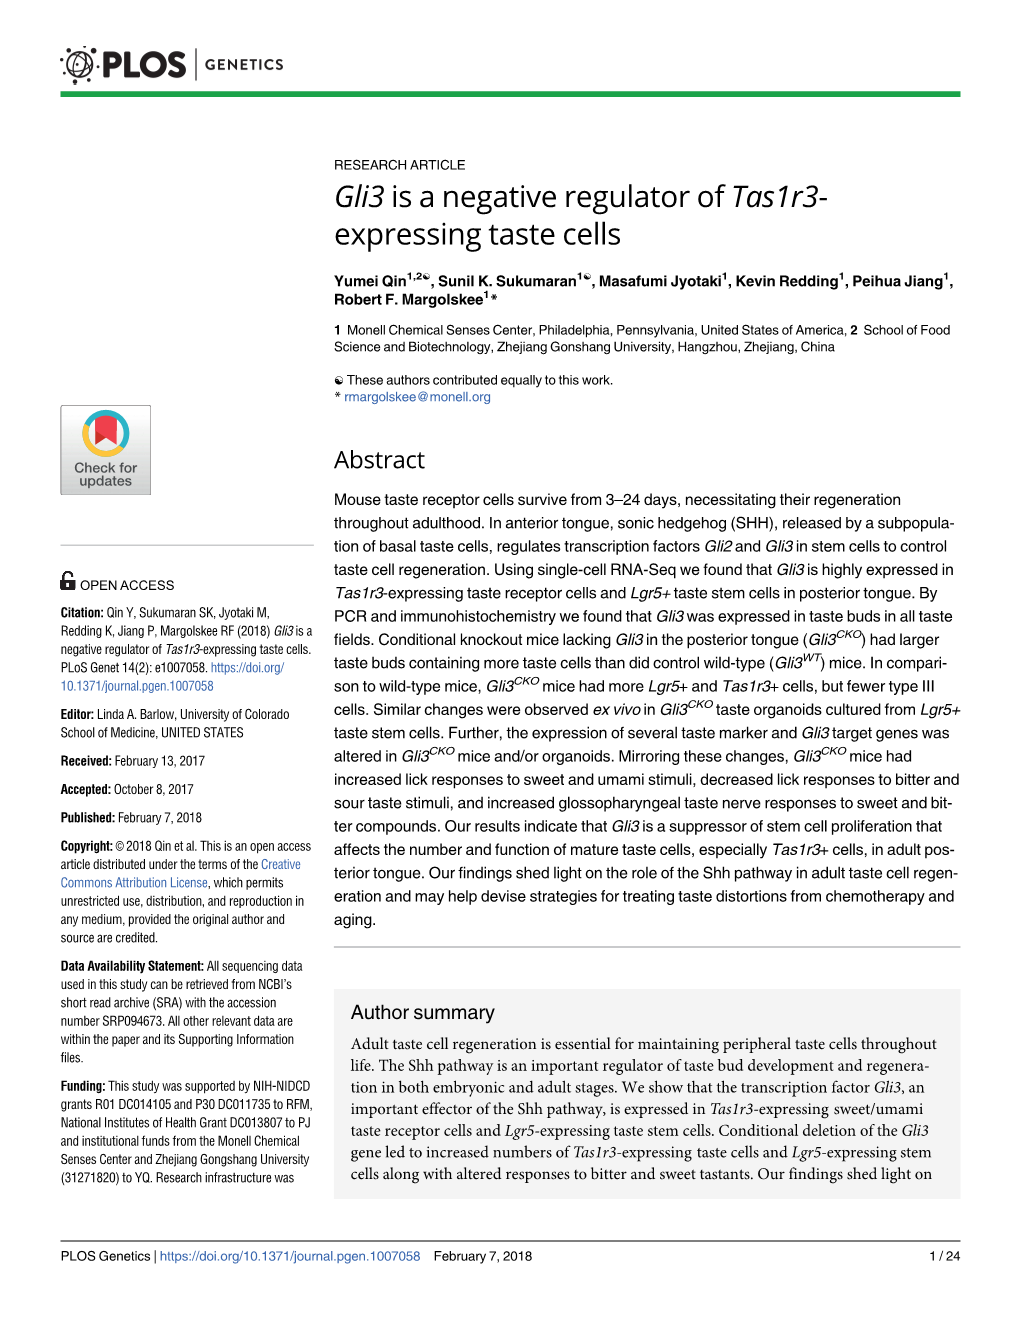 Gli3 Is a Negative Regulator of Tas1r3-Expressing Taste Cells